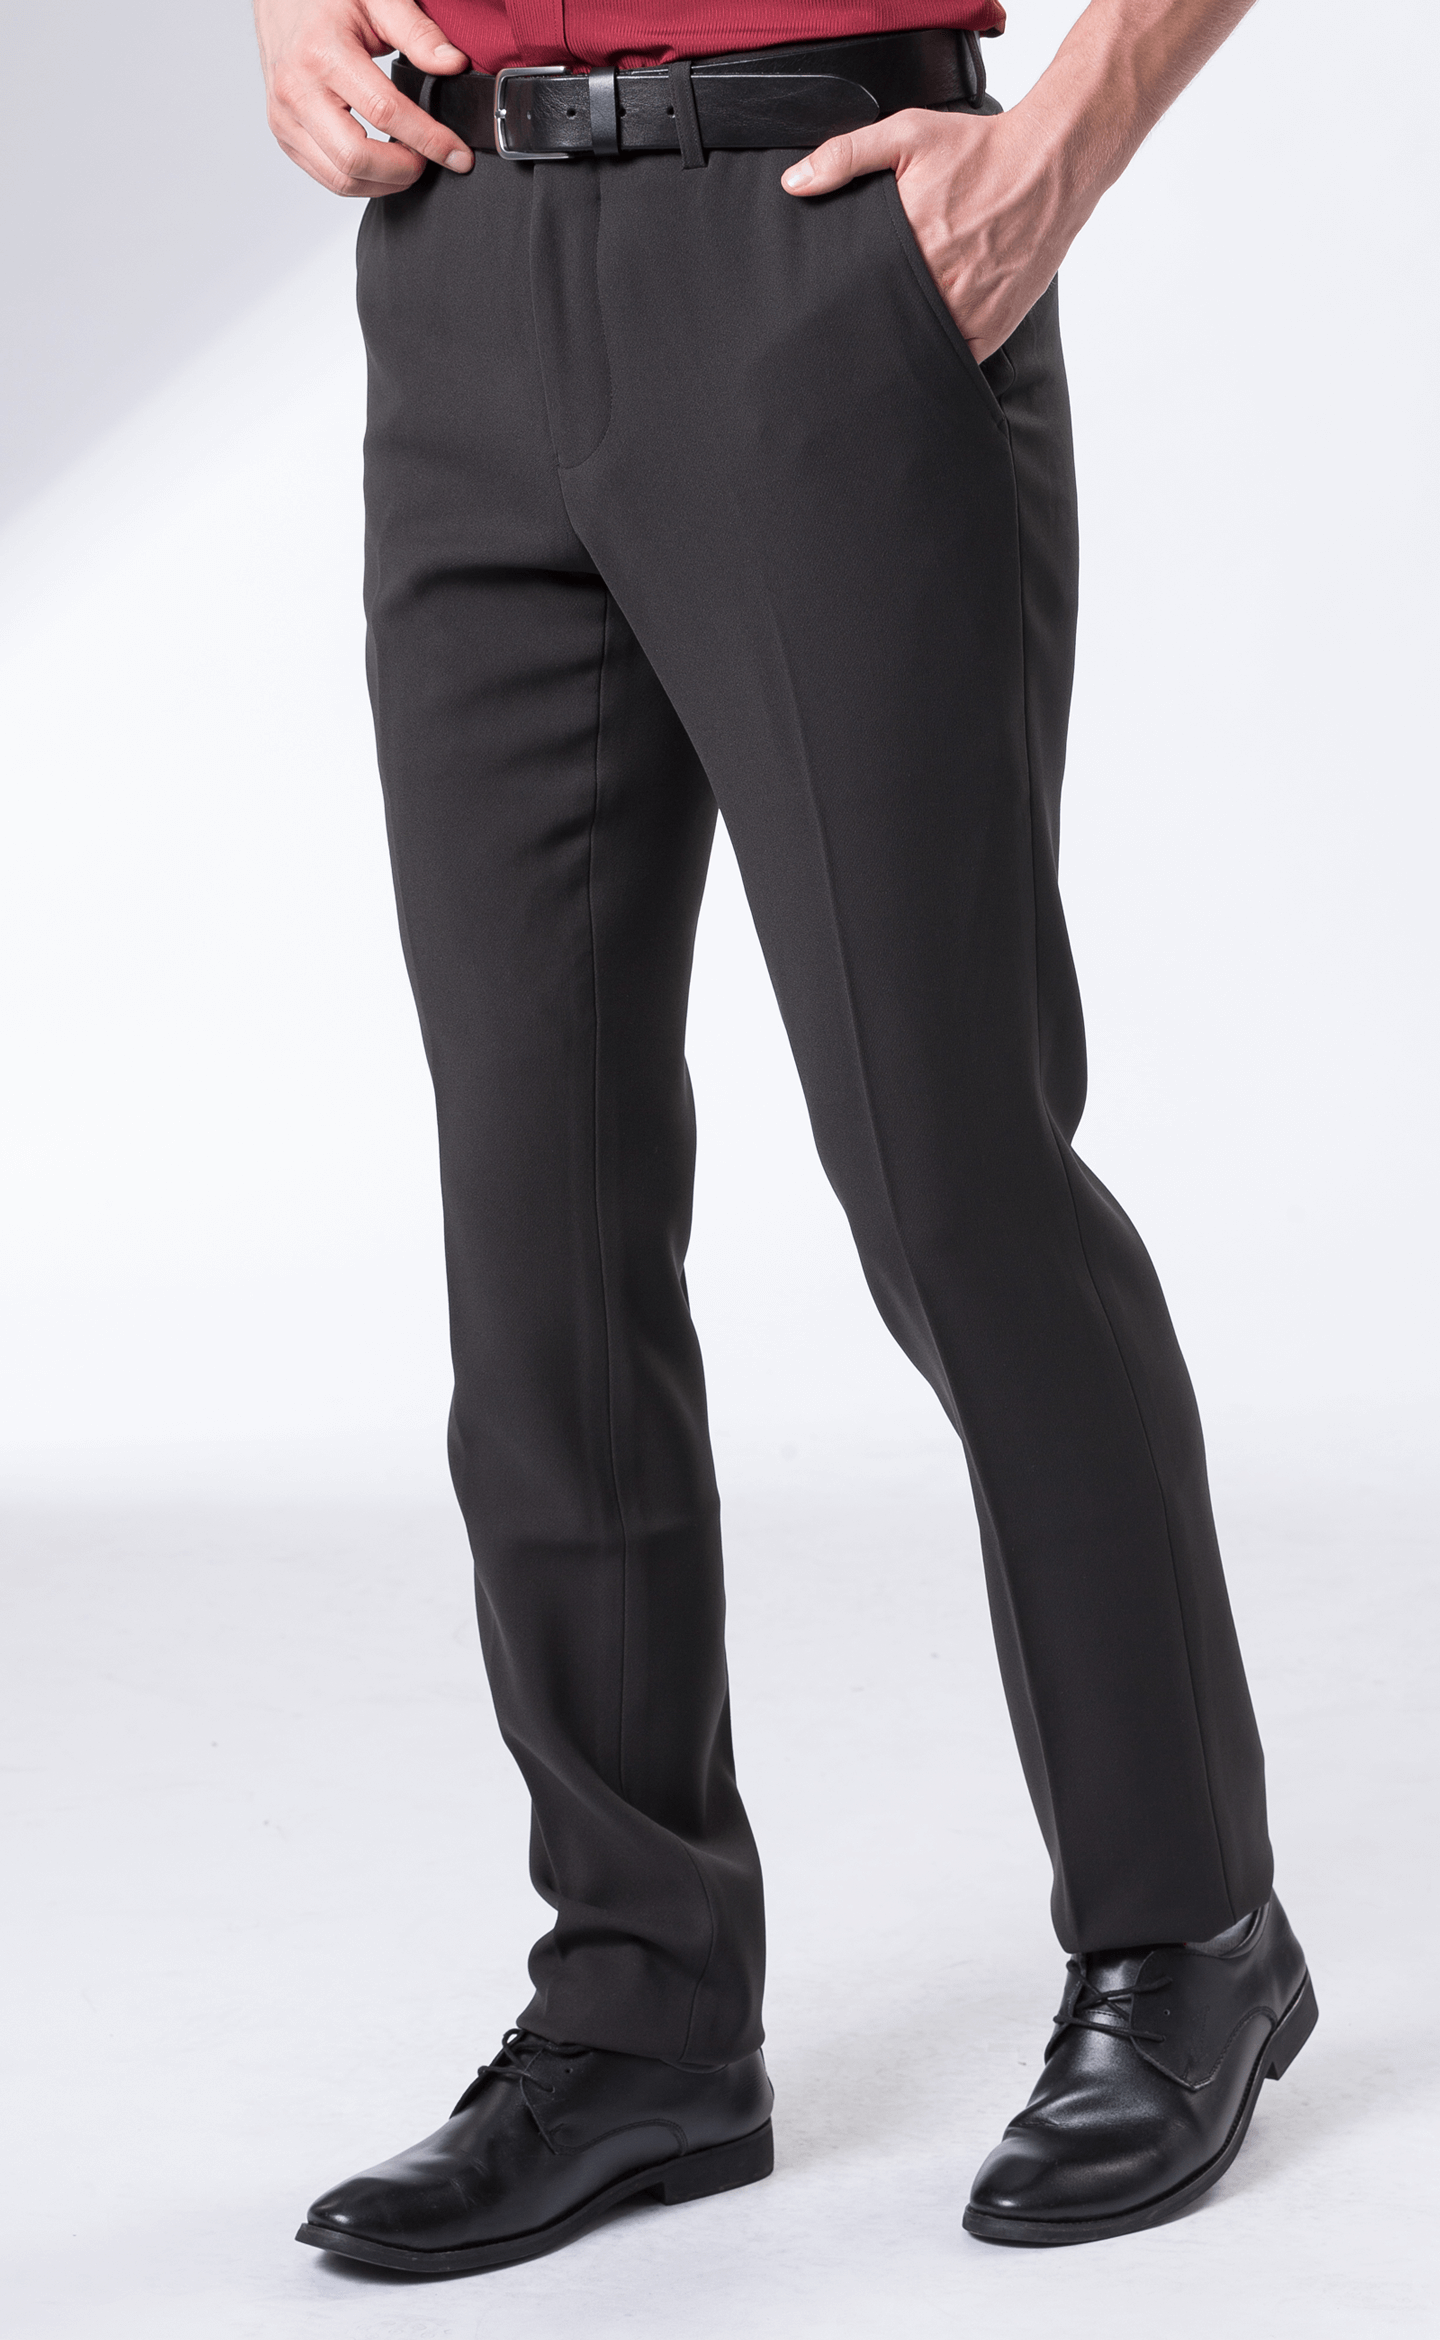 黑色斜紋合身西褲 (微厚) / 平面 彈性 抗皺  